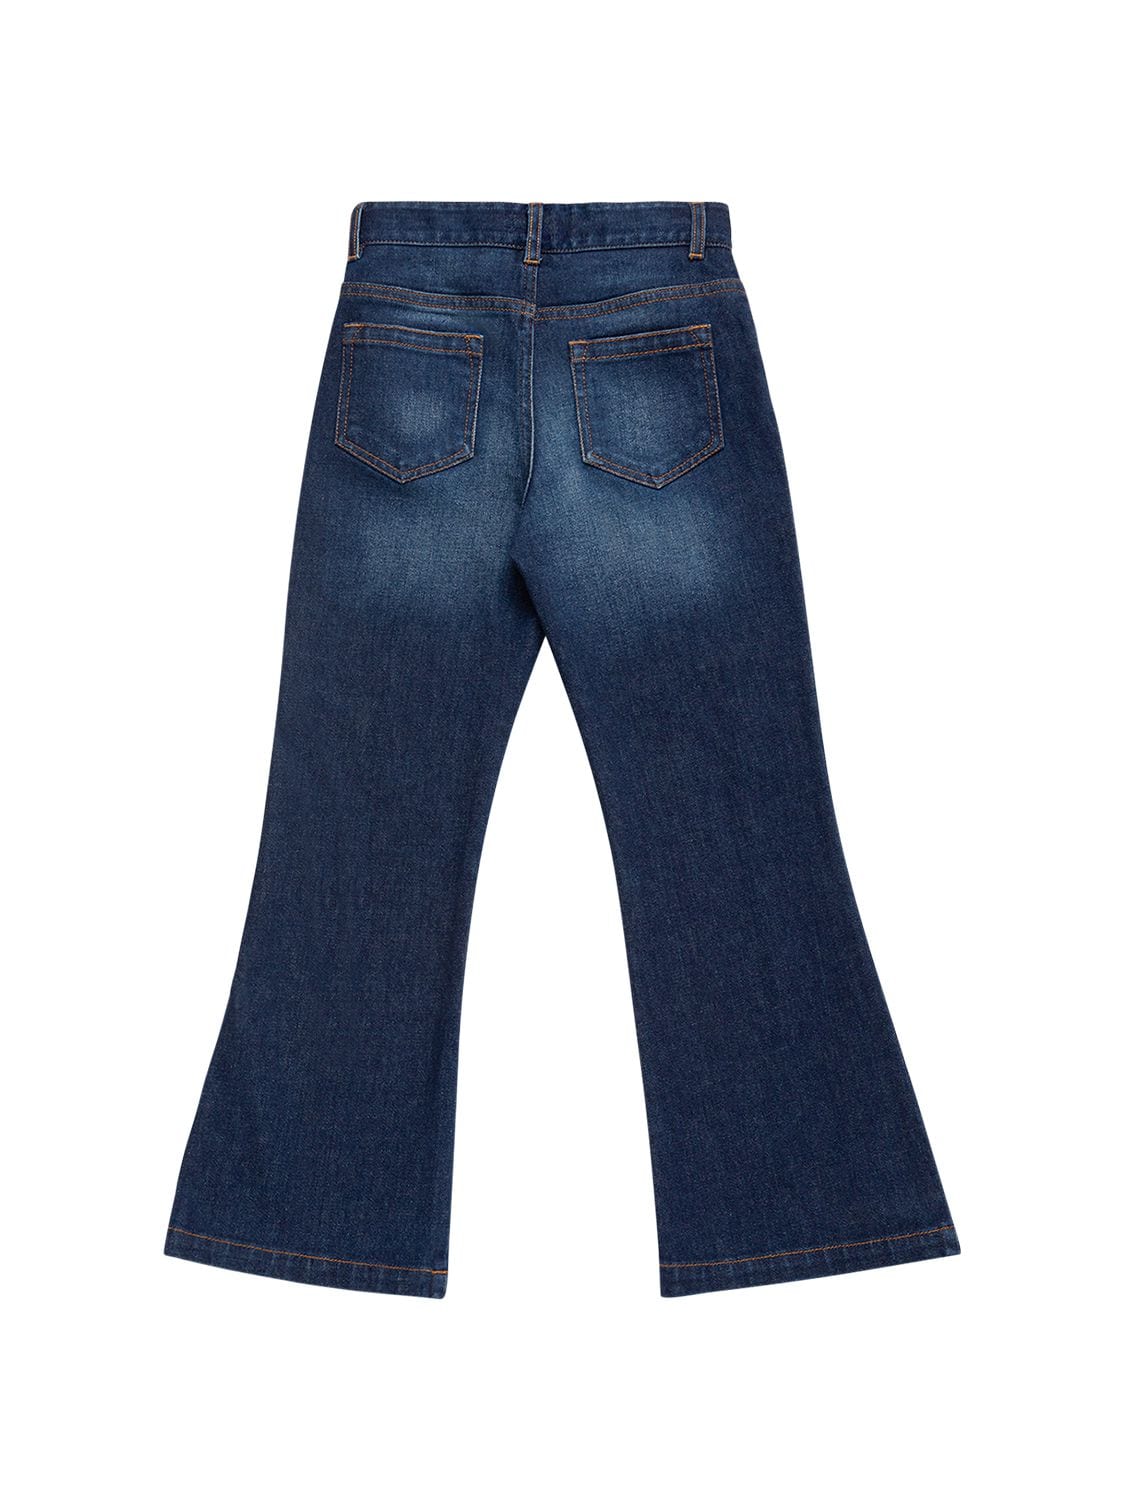 Shop Chloé Organic Cotton Denim Jeans